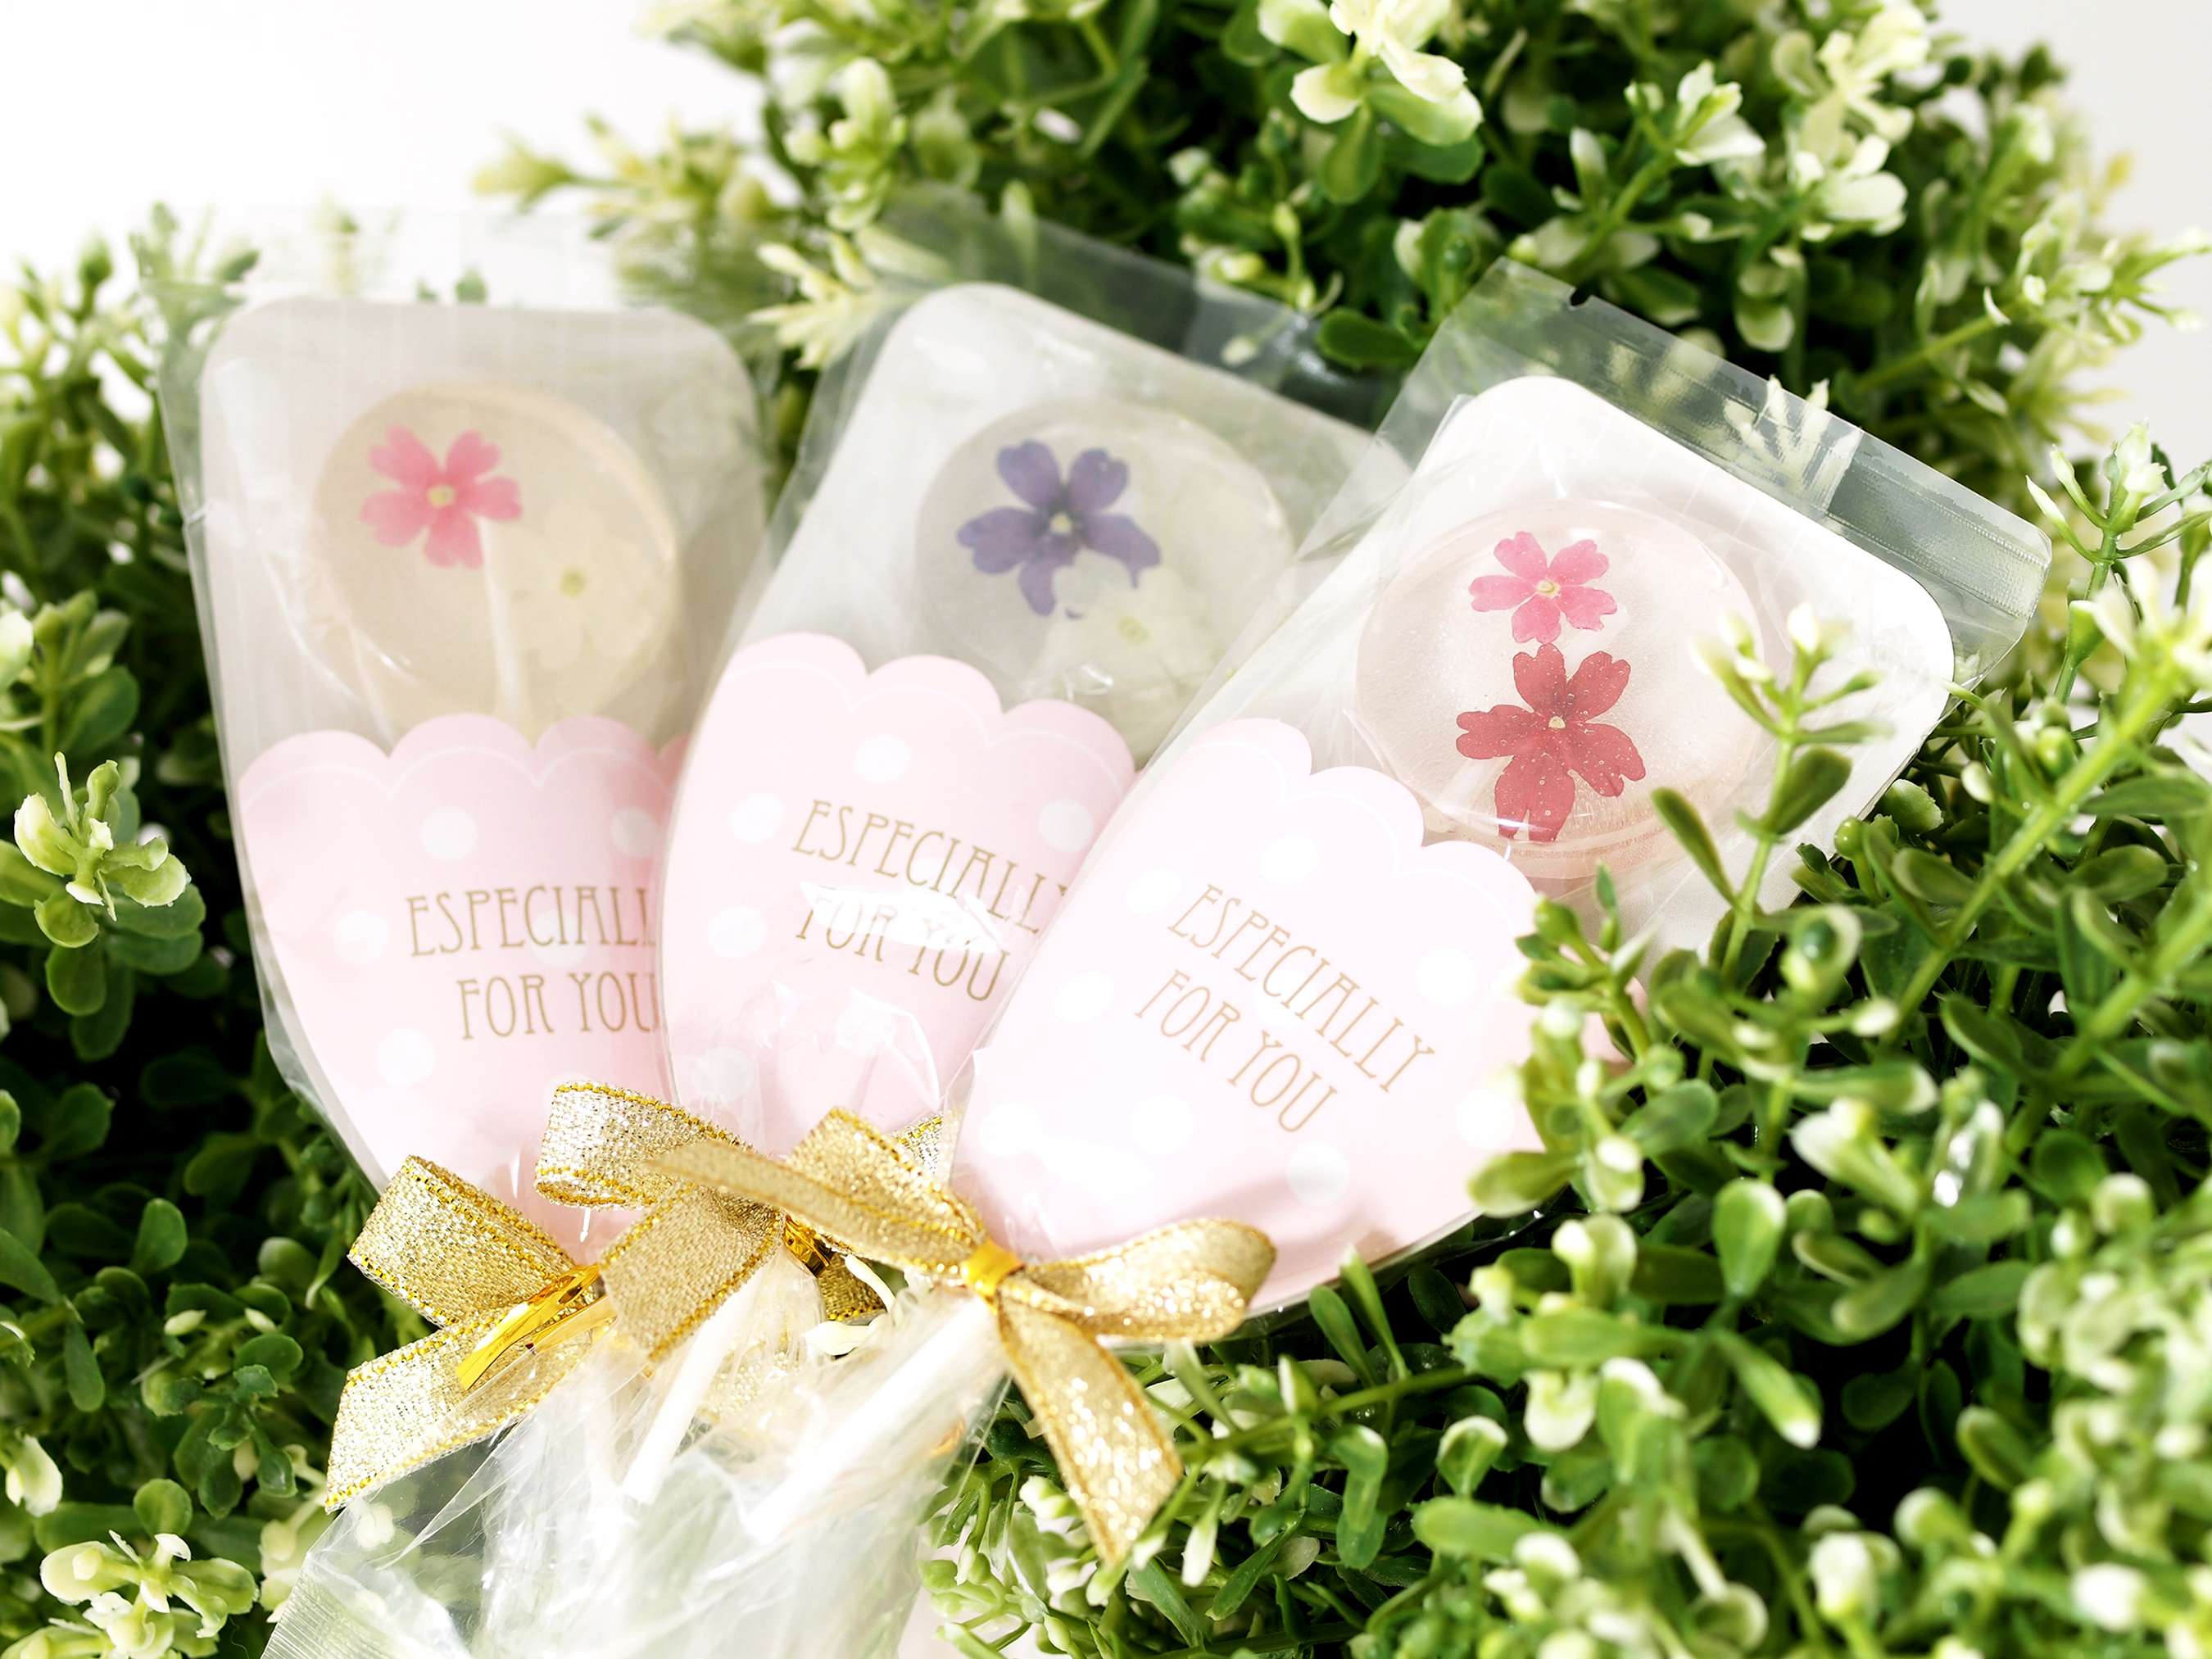 食べられる花 エディブルフラワー がキャンディに プチギフトに最適な花束ラッピングで発売 ビーテック株式会社のプレスリリース